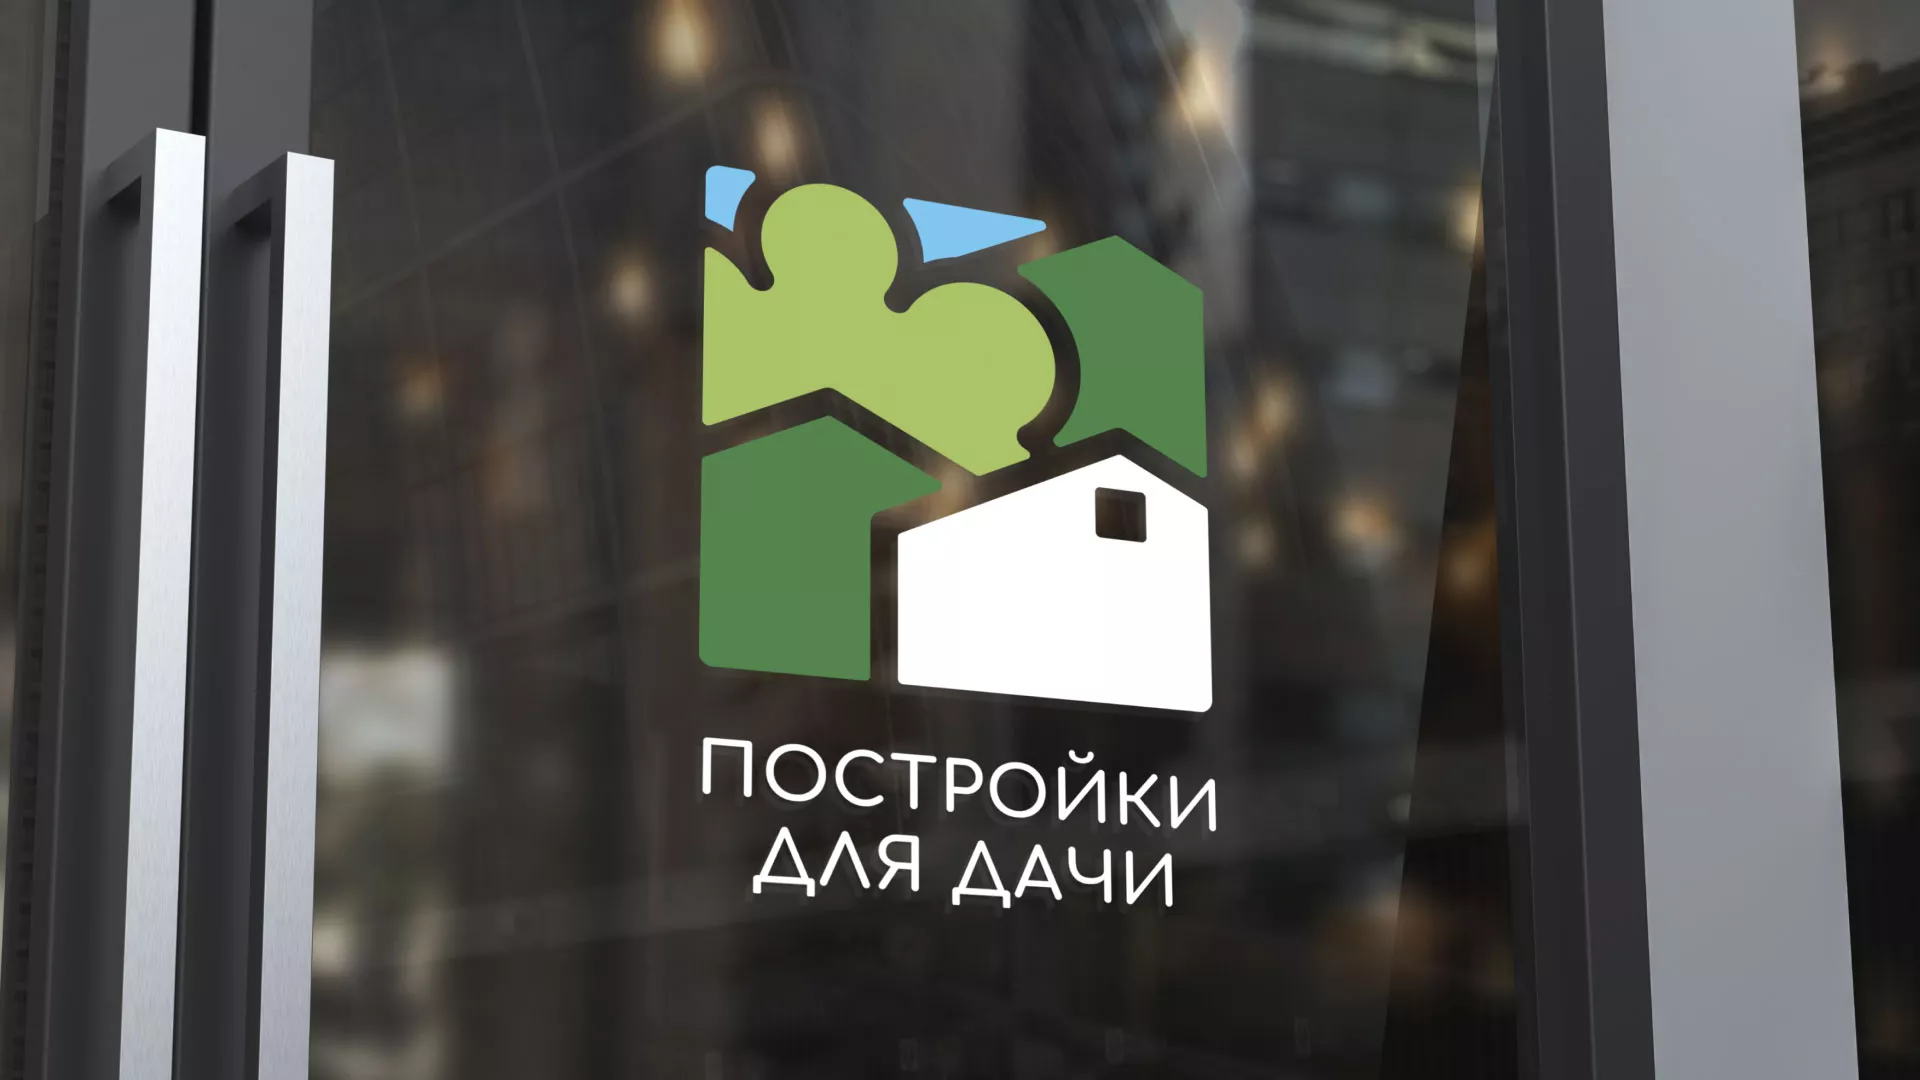 Разработка логотипа в Котельниково для компании «Постройки для дачи»